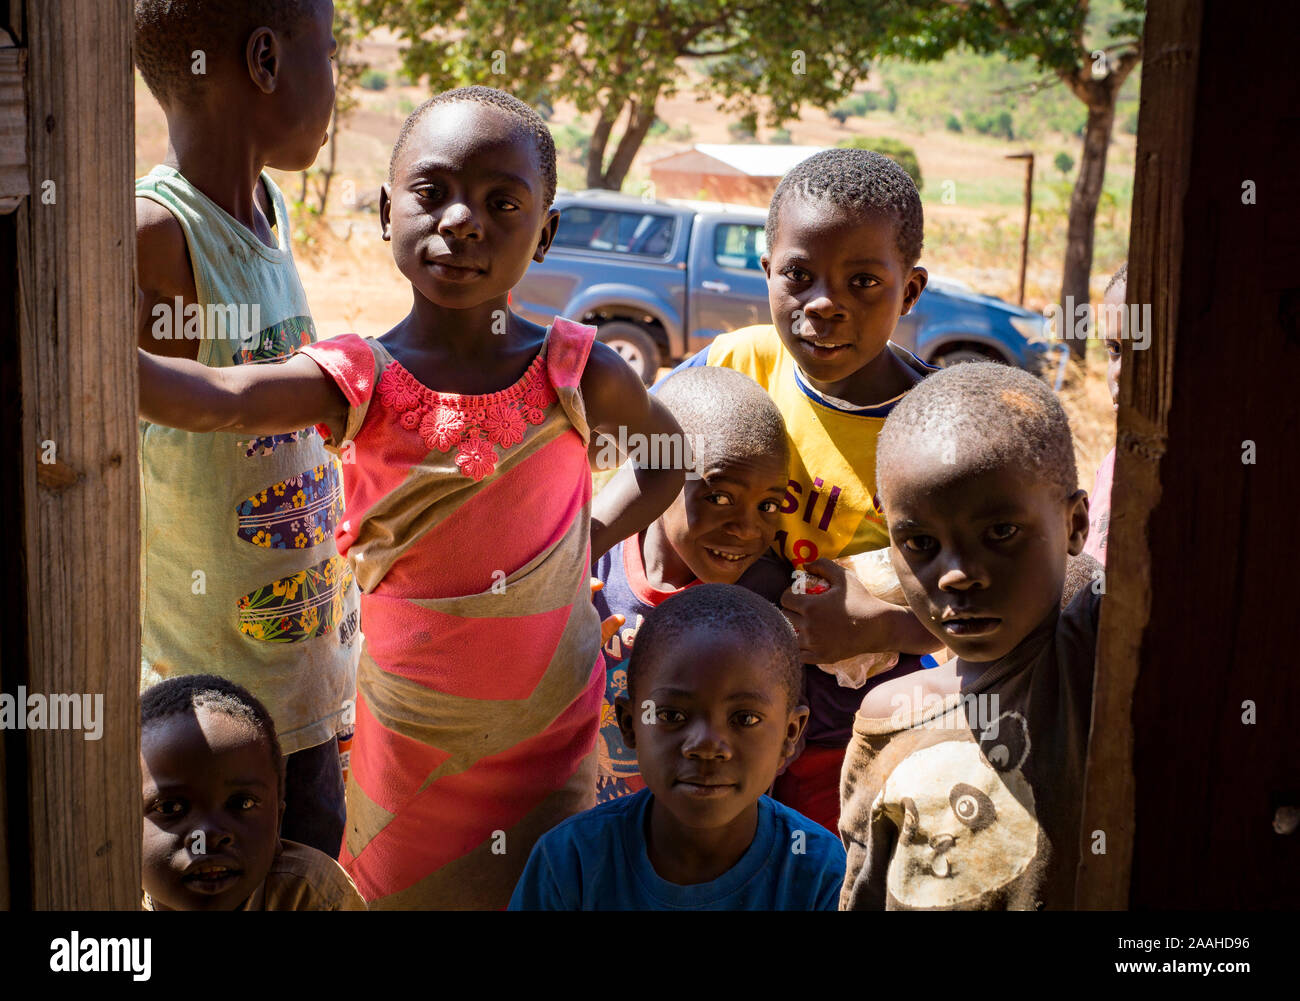 Les enfants du Malawi à la recherche à travers une porte Banque D'Images